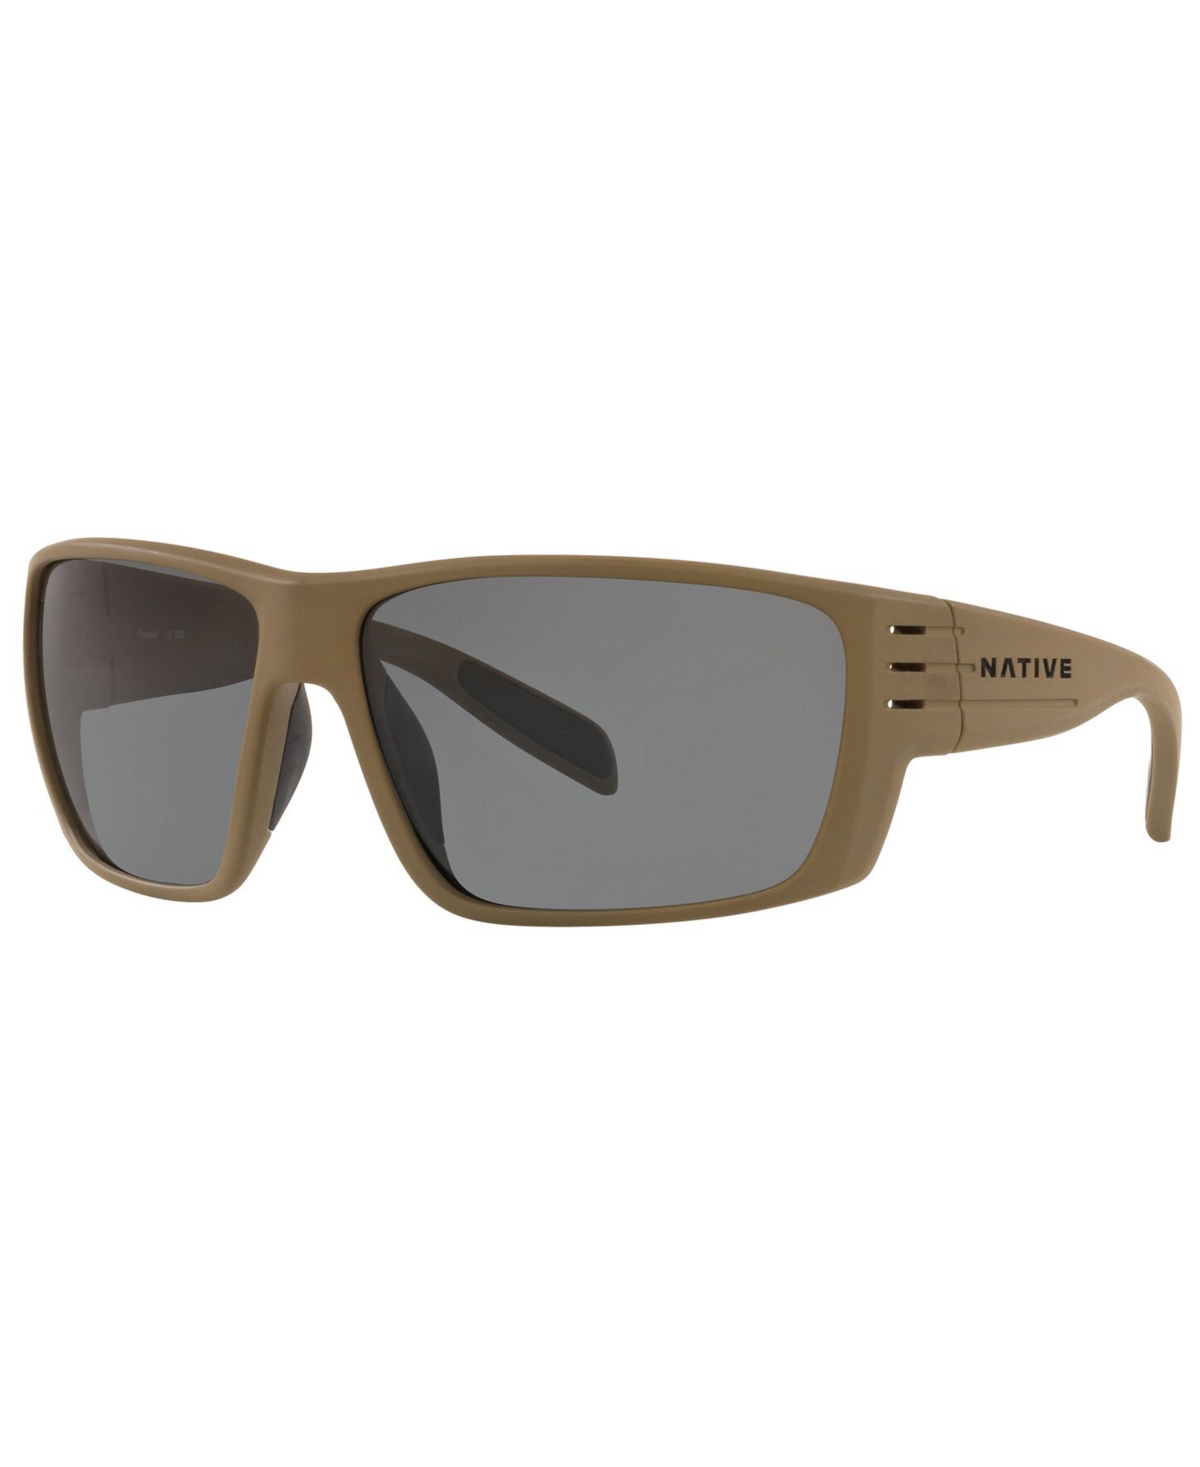 Native Men's Polarized Sunglasses, XD9014 66 - DESERT TAN/GREY